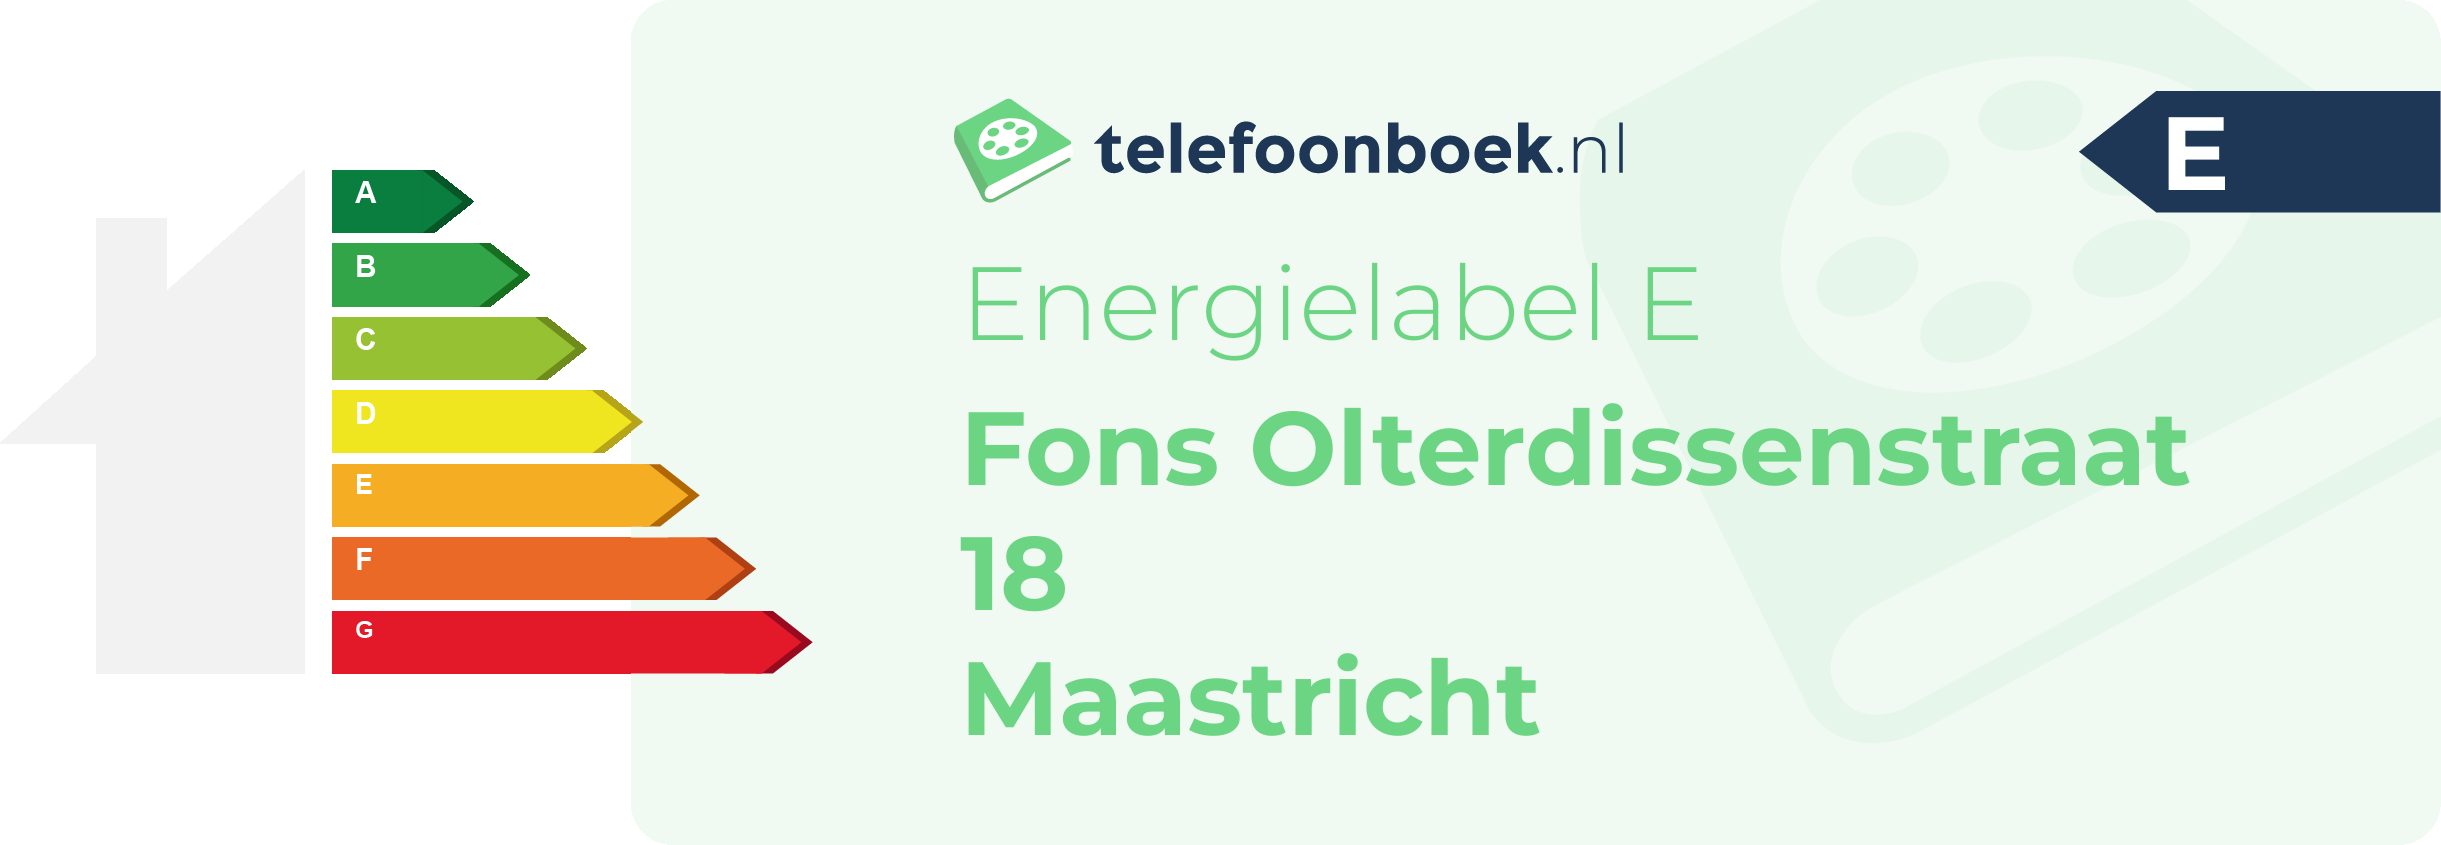 Energielabel Fons Olterdissenstraat 18 Maastricht